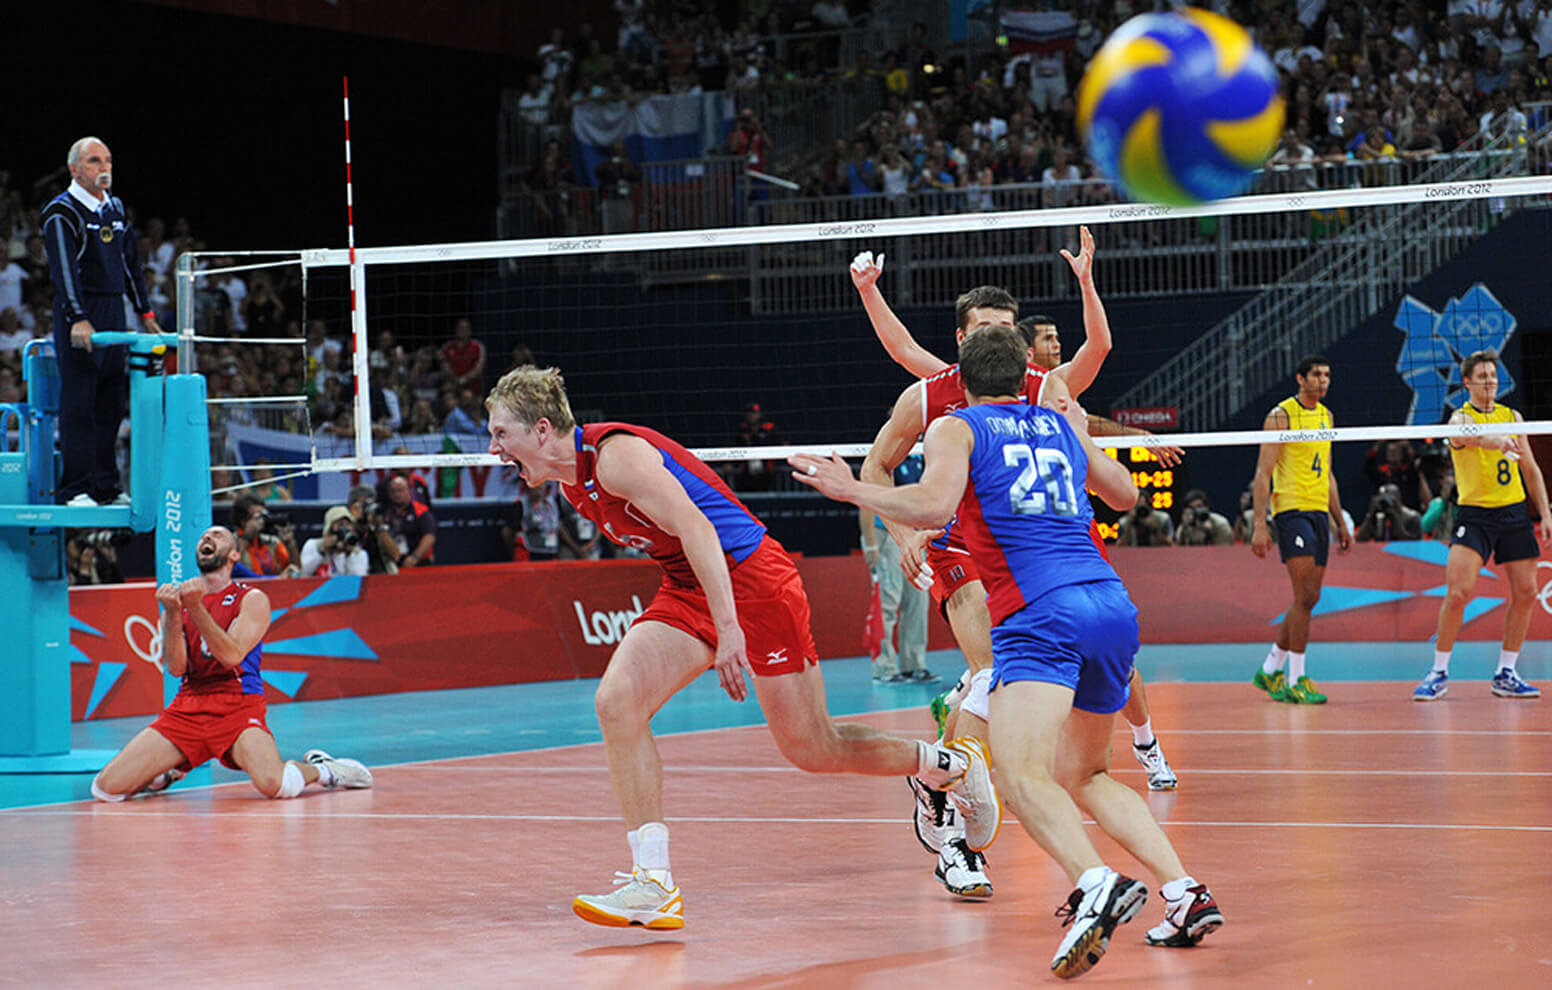 2012 волейбол мужчины россия бразилия финал